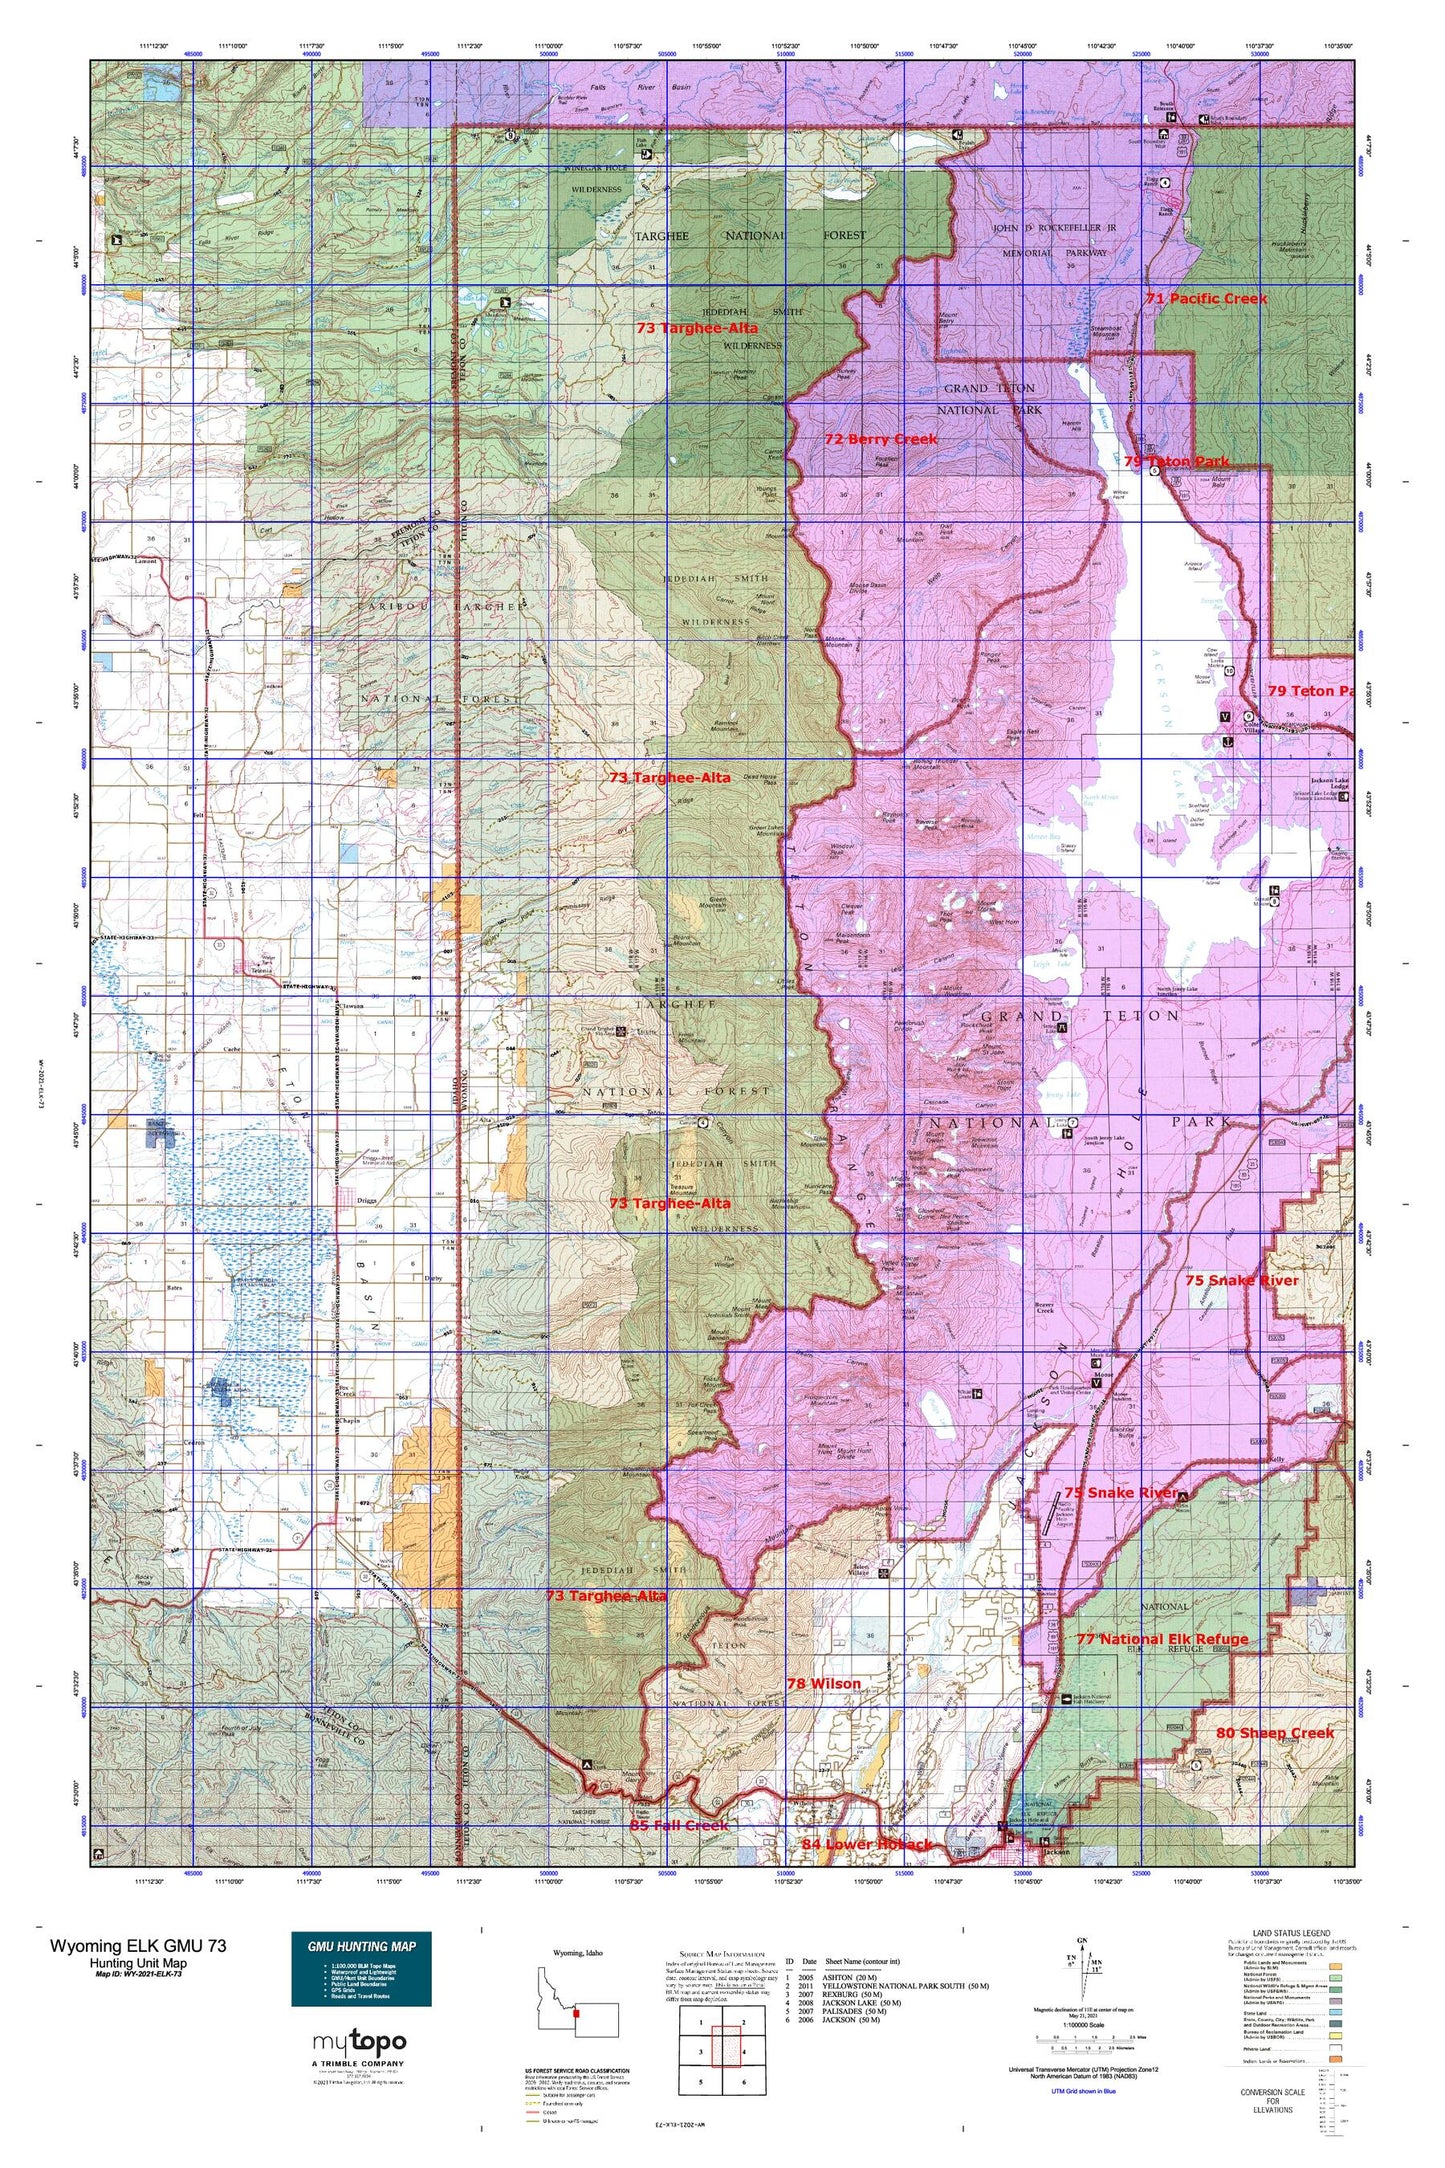 Wyoming Elk GMU 73 Map Image